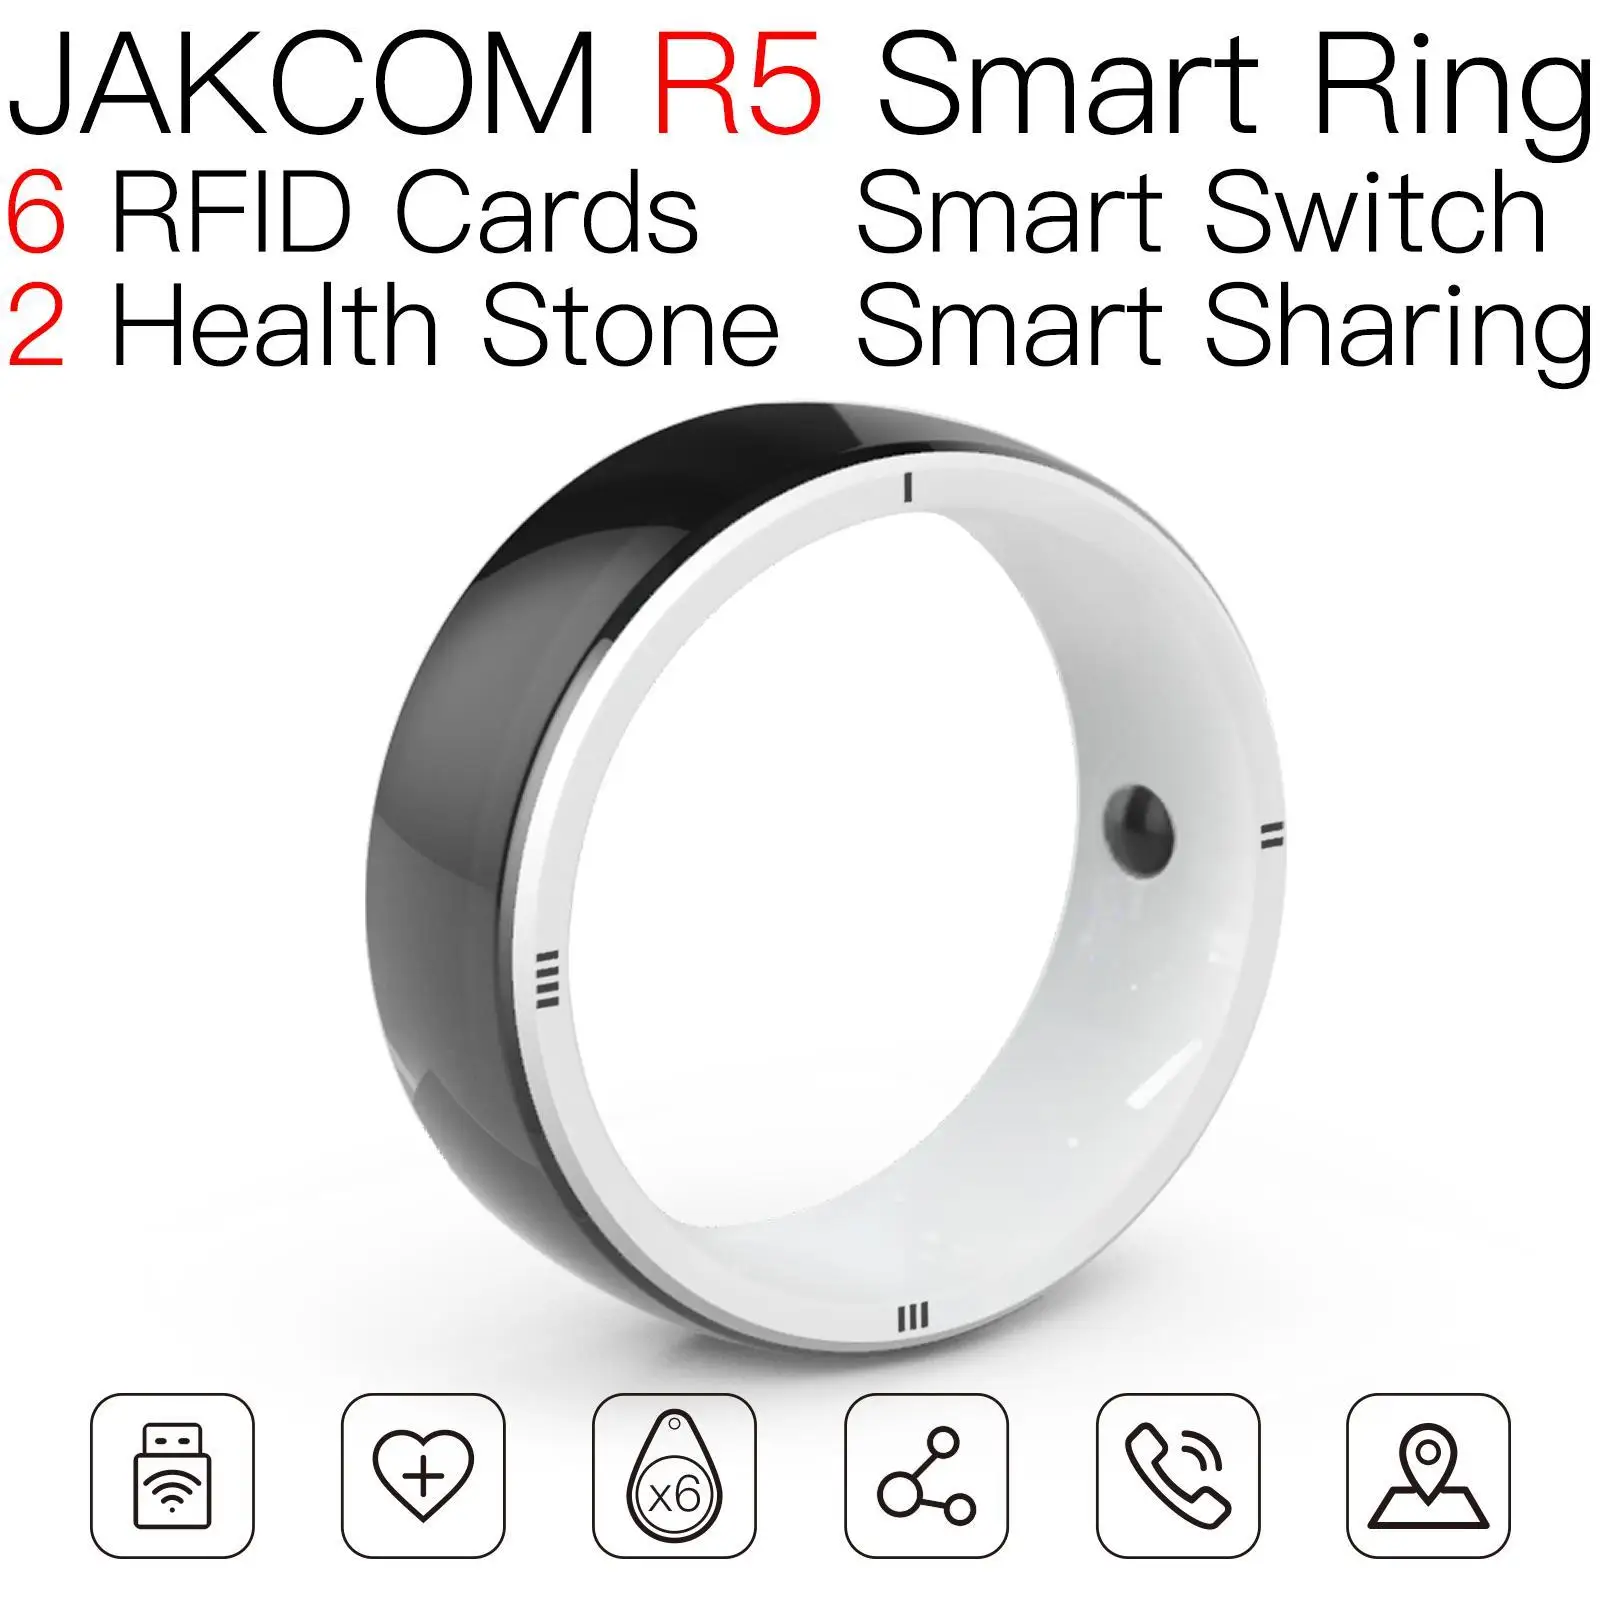 

Новое Поступление Смарт-кольца JAKCOM R5, Радиочастотная Идентификация 125 кГц, кольцо для копирования ic-карты, принтера, браслетов, умное автоматическое устройство для сканирования рыбы и еды